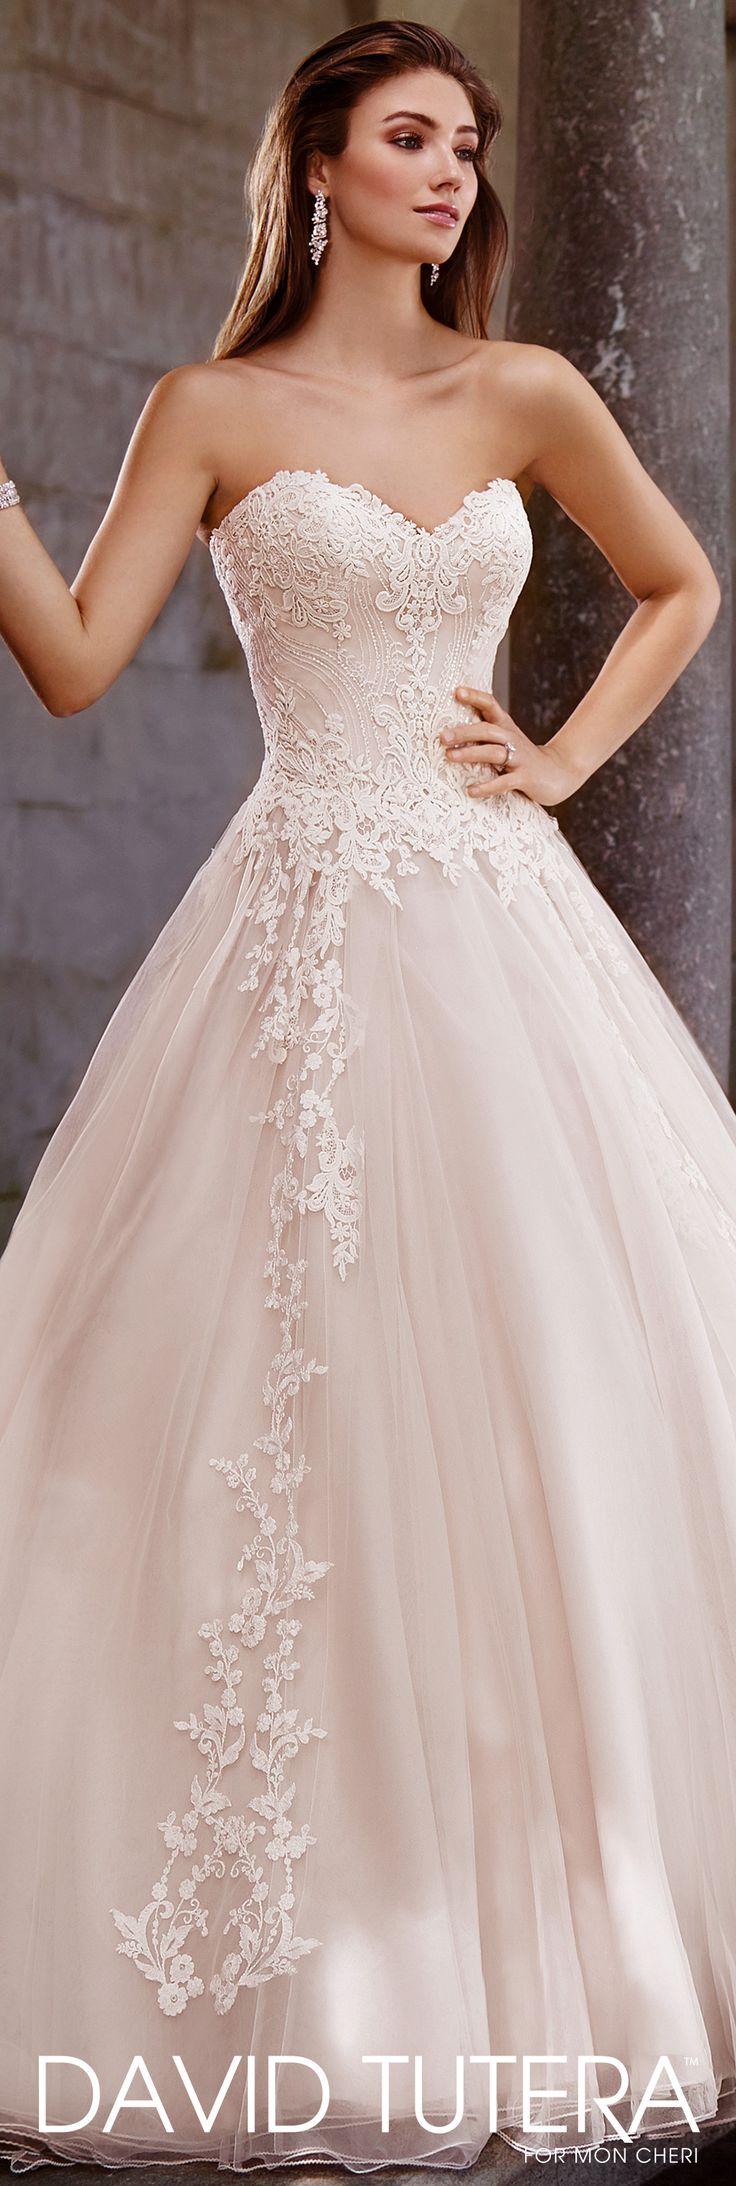 زفاف - David Tutera Wedding Dresses - 117267 Topaz